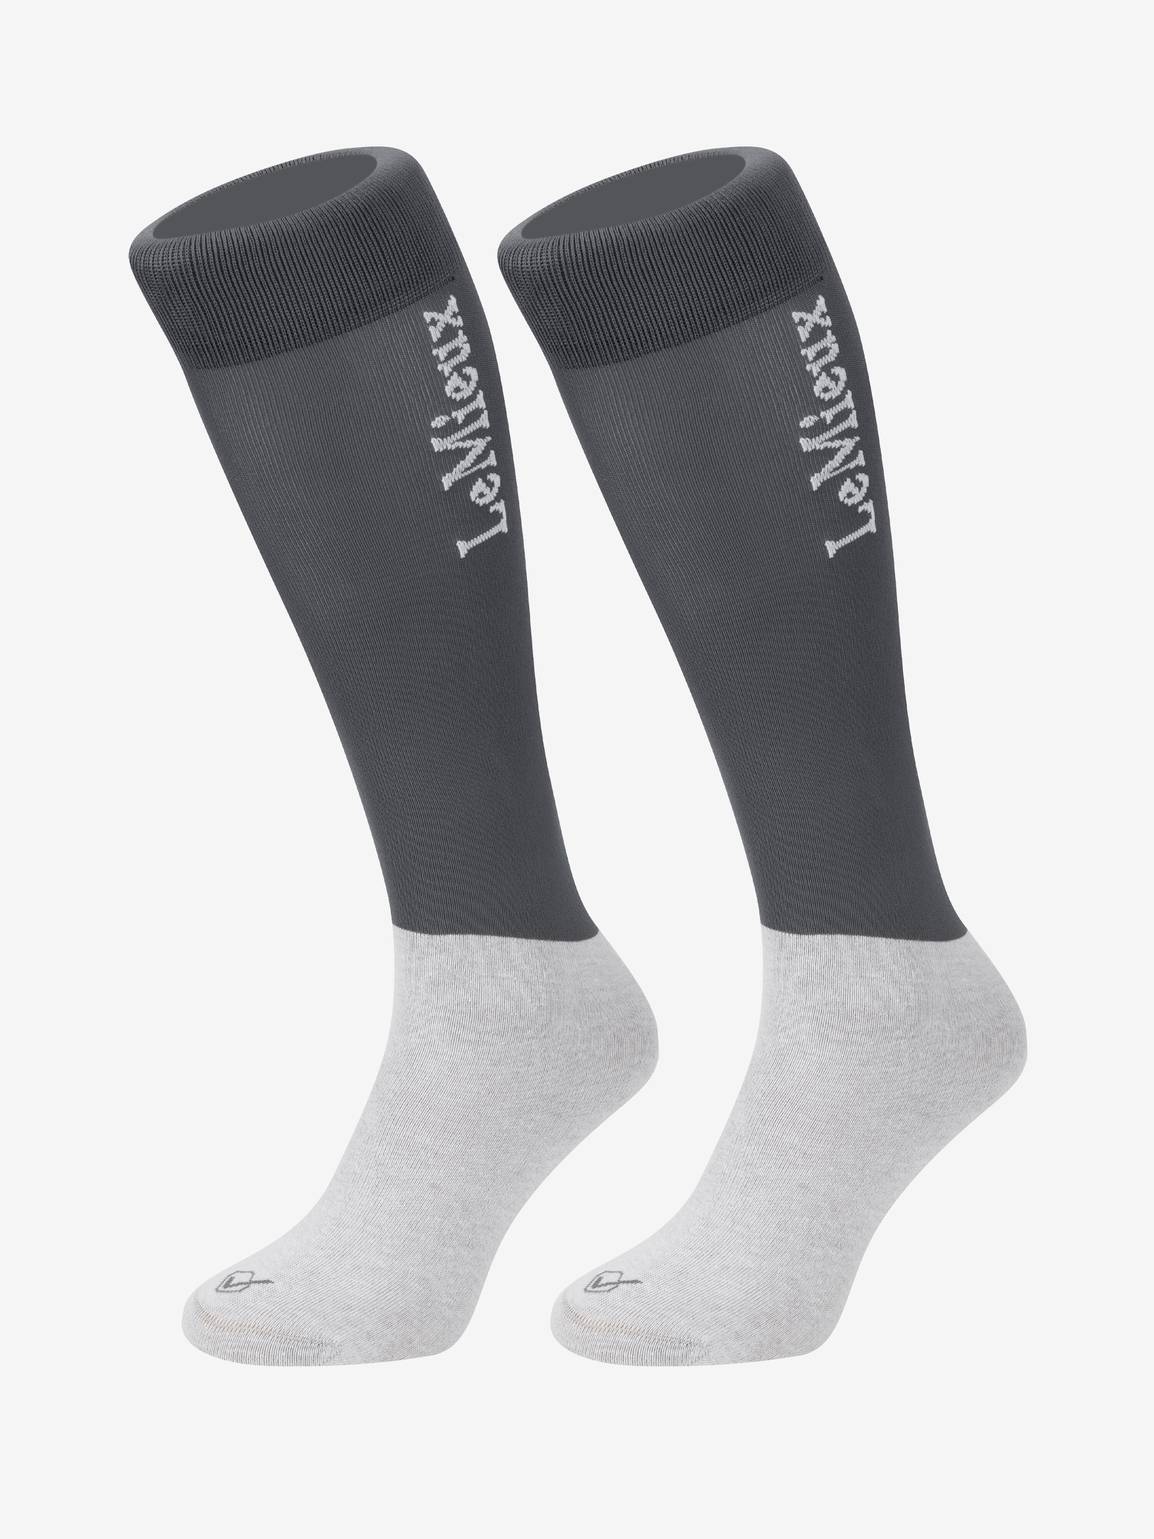 LeMieux Competition 2 Pack Socks